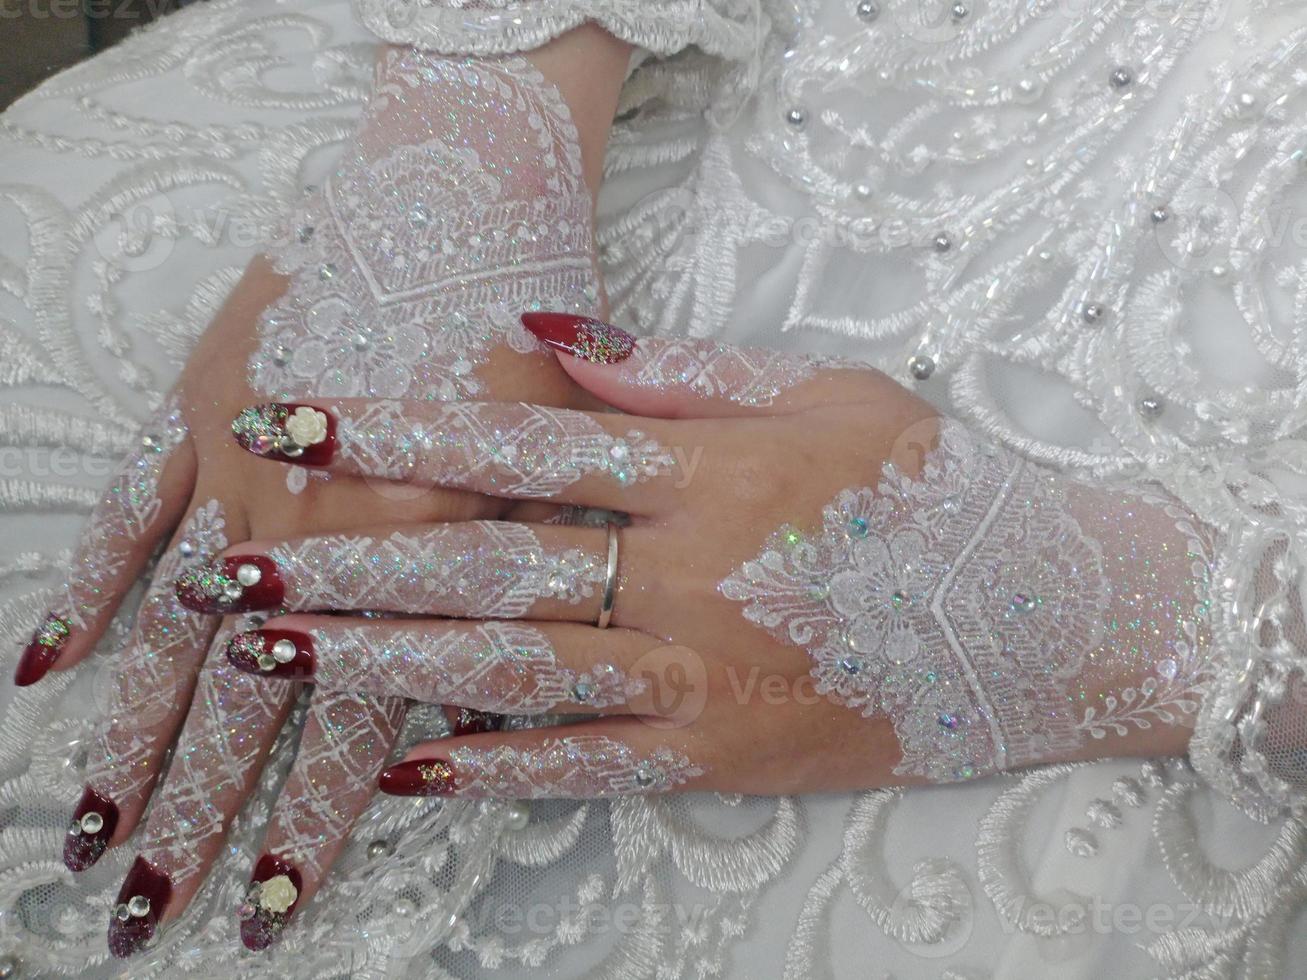 hermosa henna para preparar el día de la boda foto